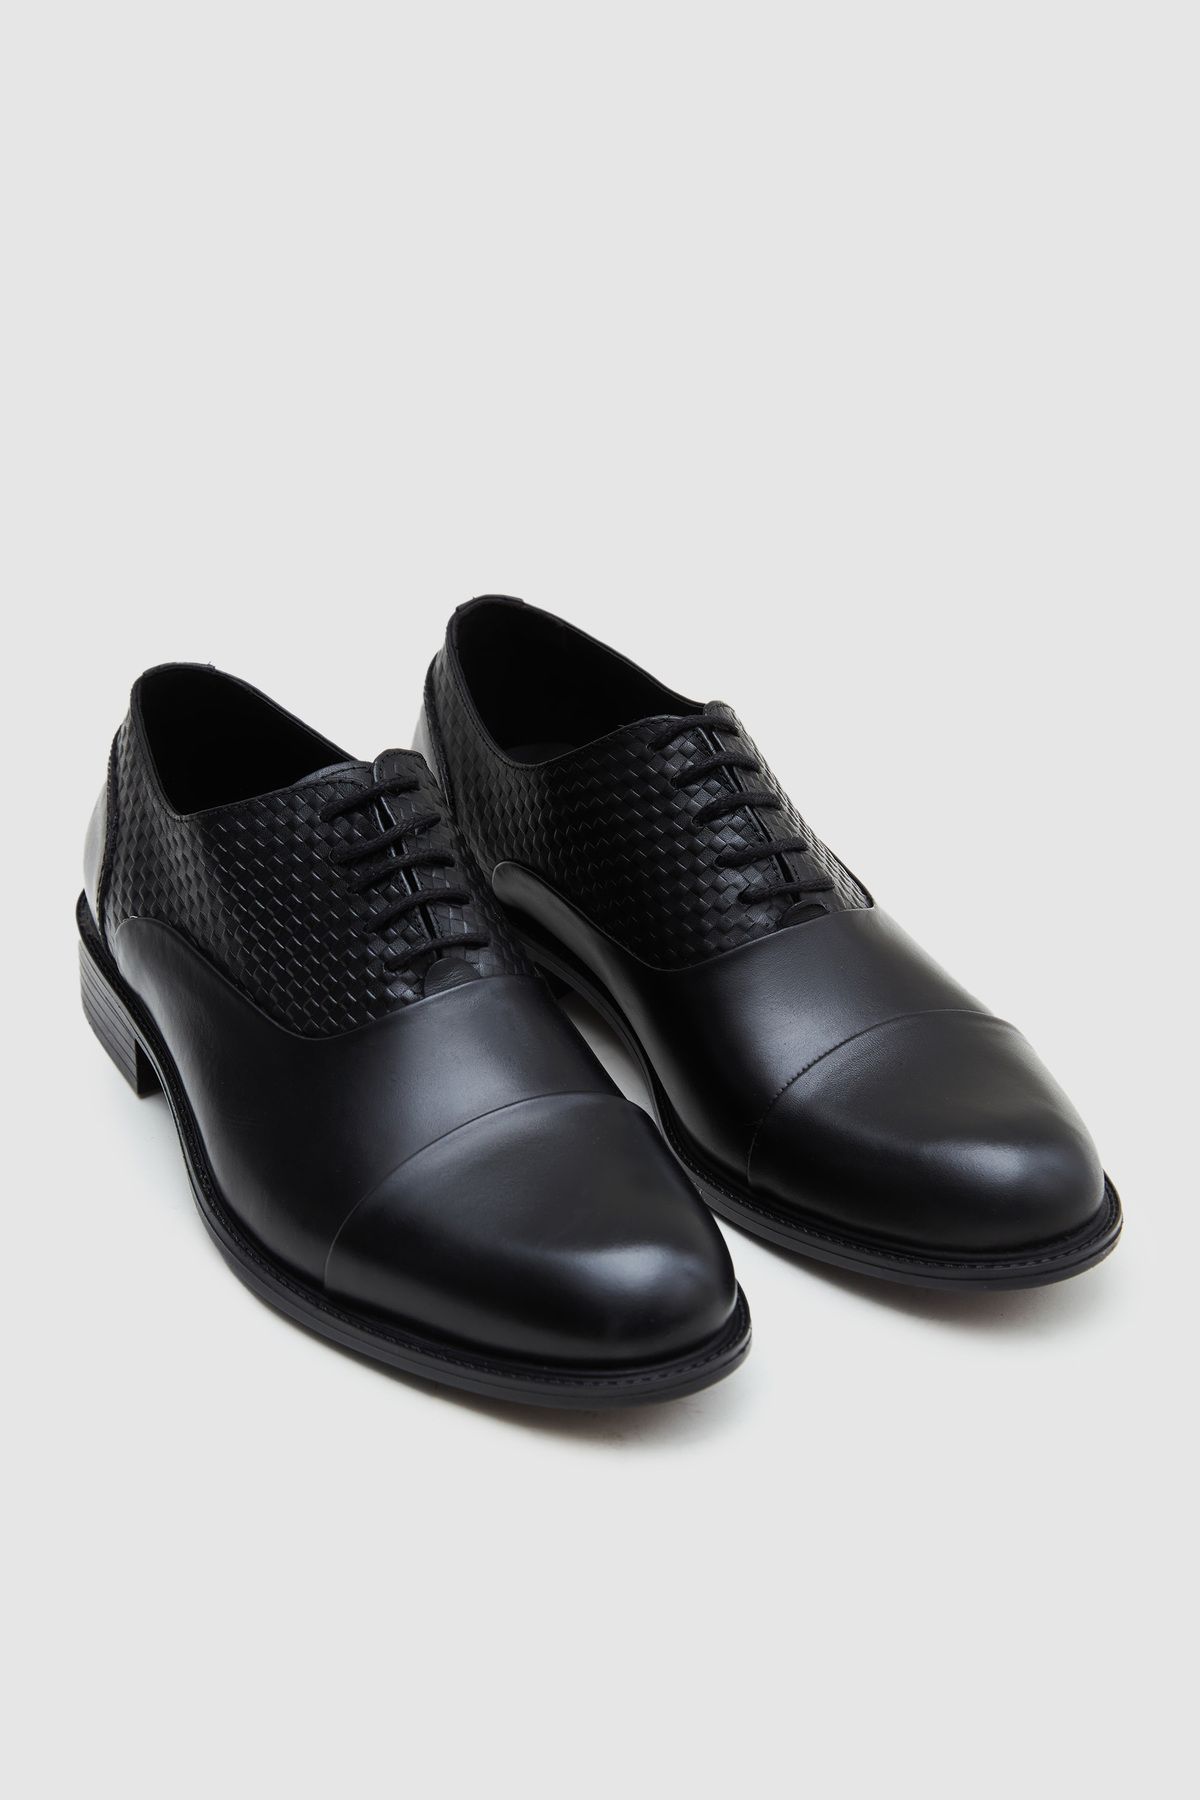 D'S Damat Siyah Klasik Deri Ayakkabı